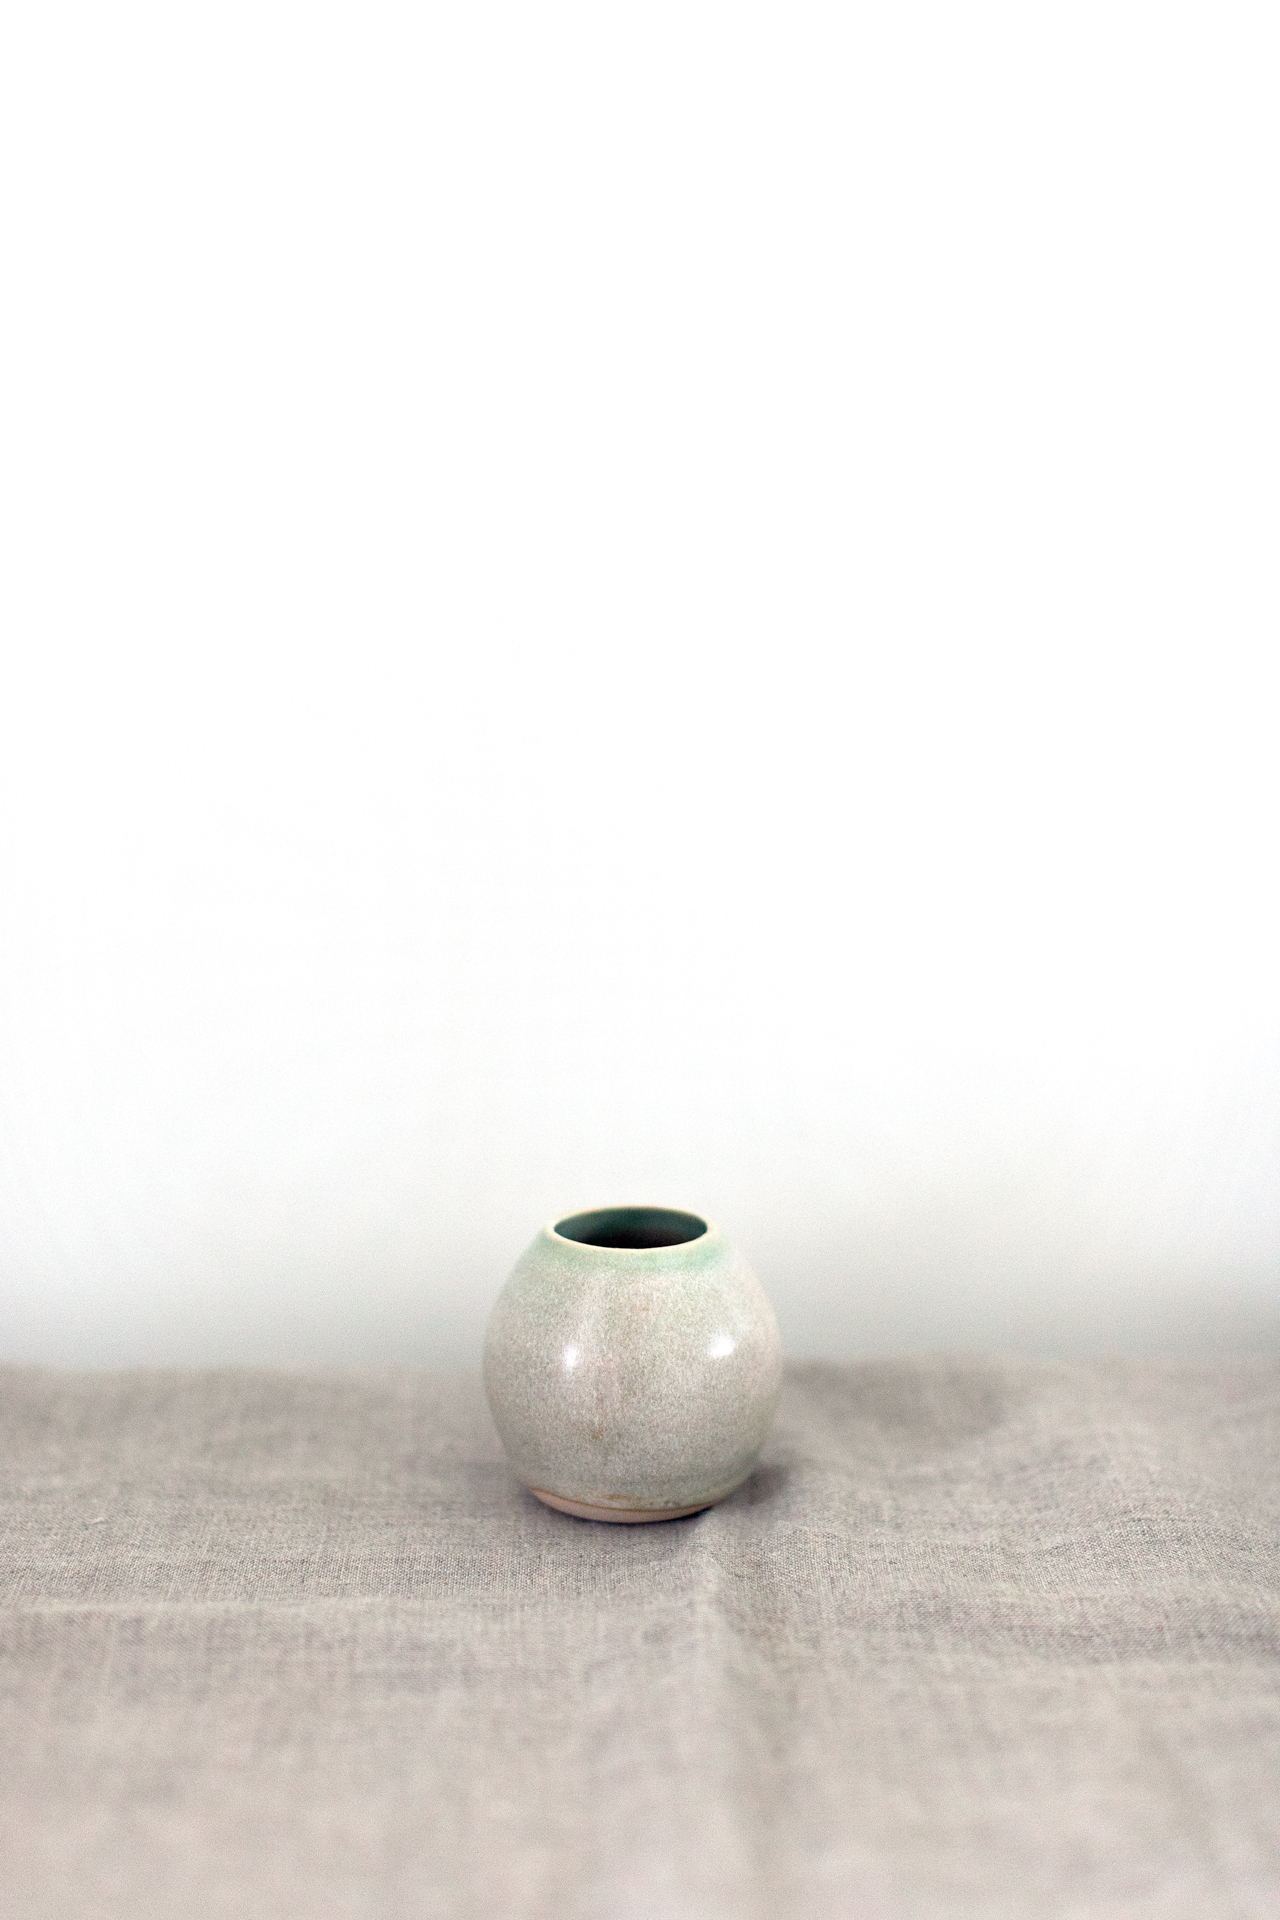 Sayaka-Namba--Small-Vase.jpg